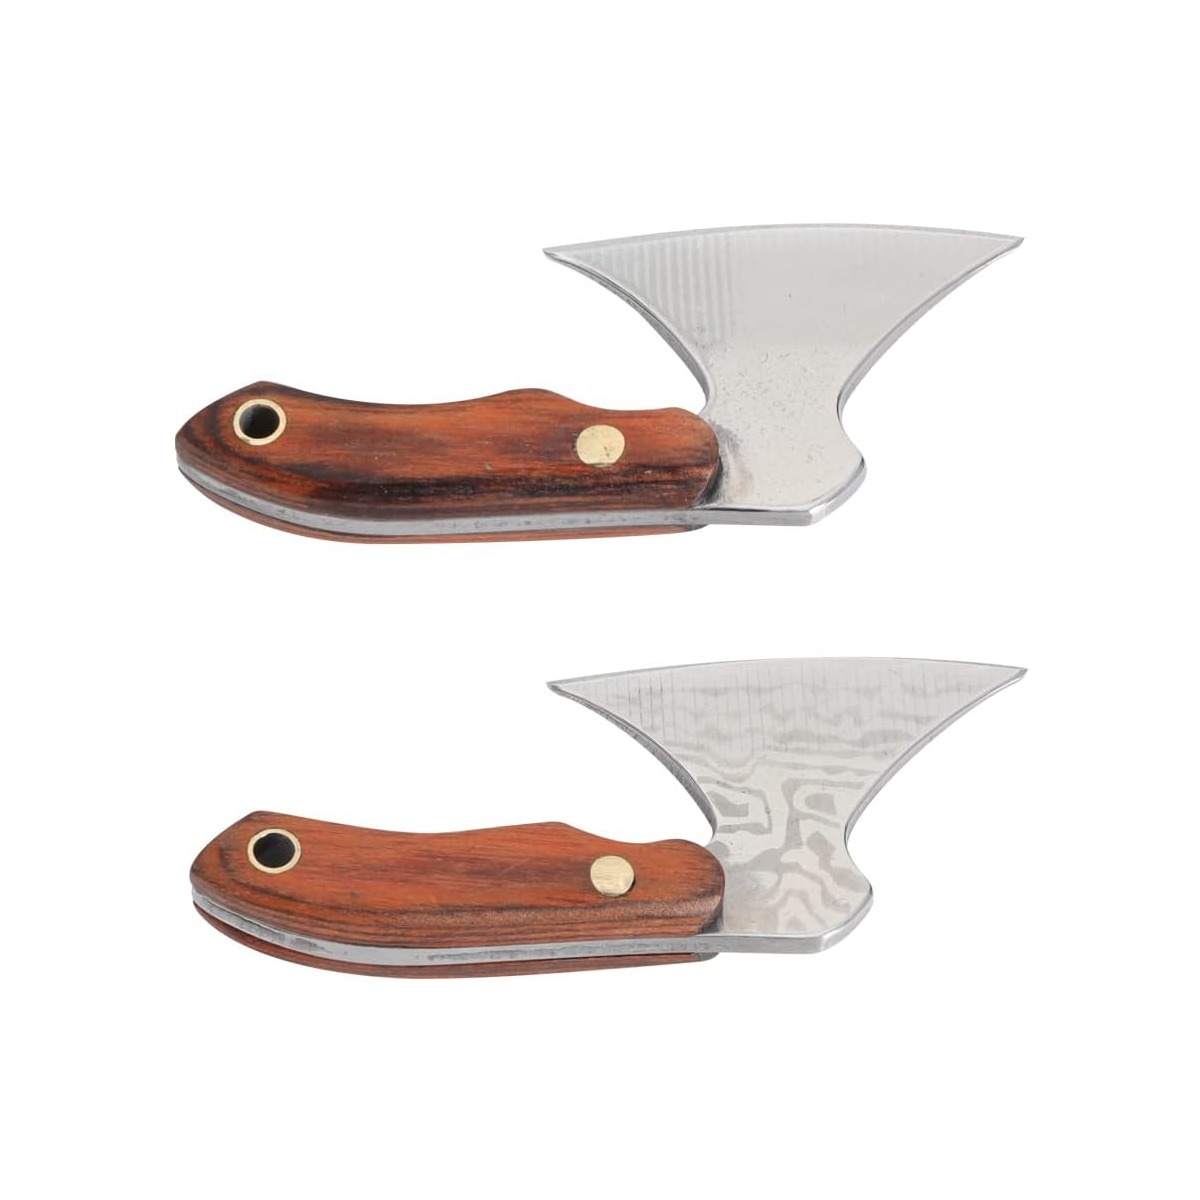 Viking knive